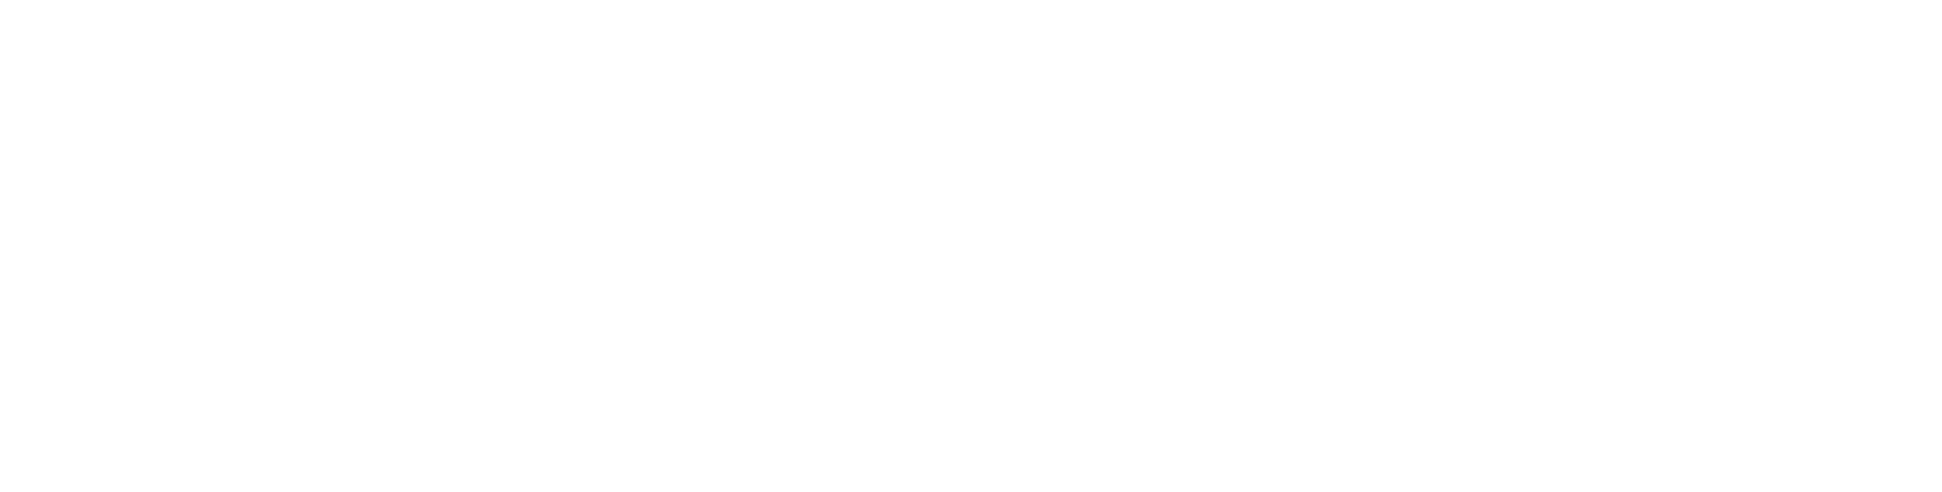 nb church logo